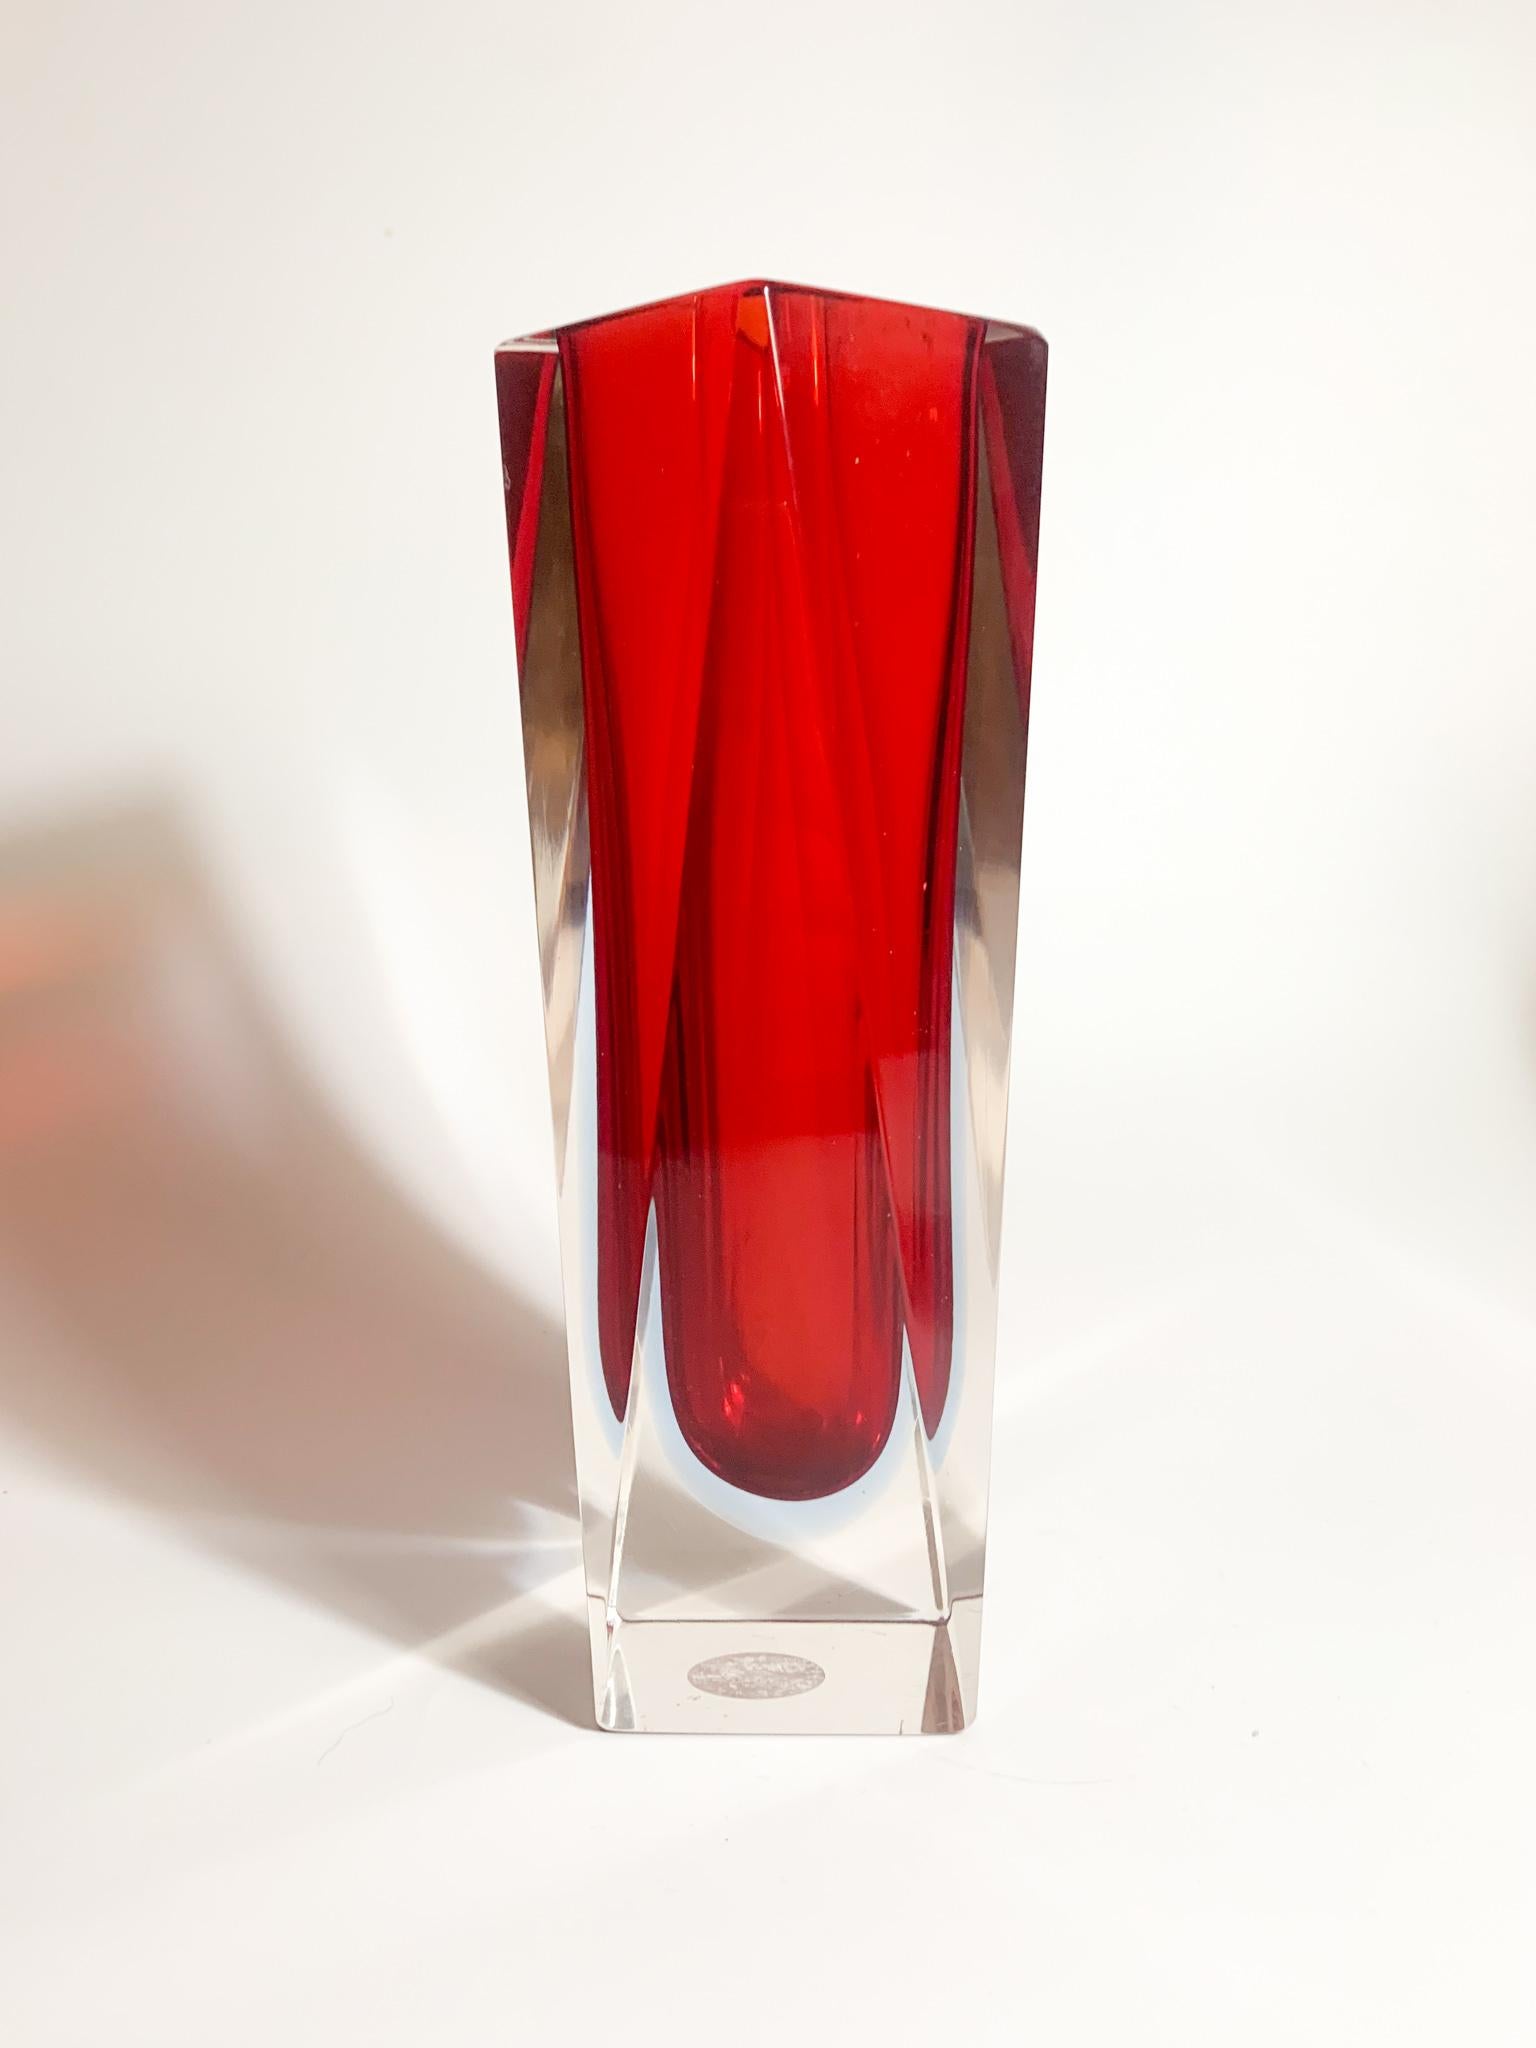 Vase mit geometrischer Form aus rotem und blauem Murano-Glas, deren Herstellung Flavio Poli in den 1970er Jahren zugeschrieben wird

Ø 8 cm, H 20 cm

Flavio Poli wurde 1900 in Chioggia geboren und ist als großer italienischer Keramiker, Zeichner